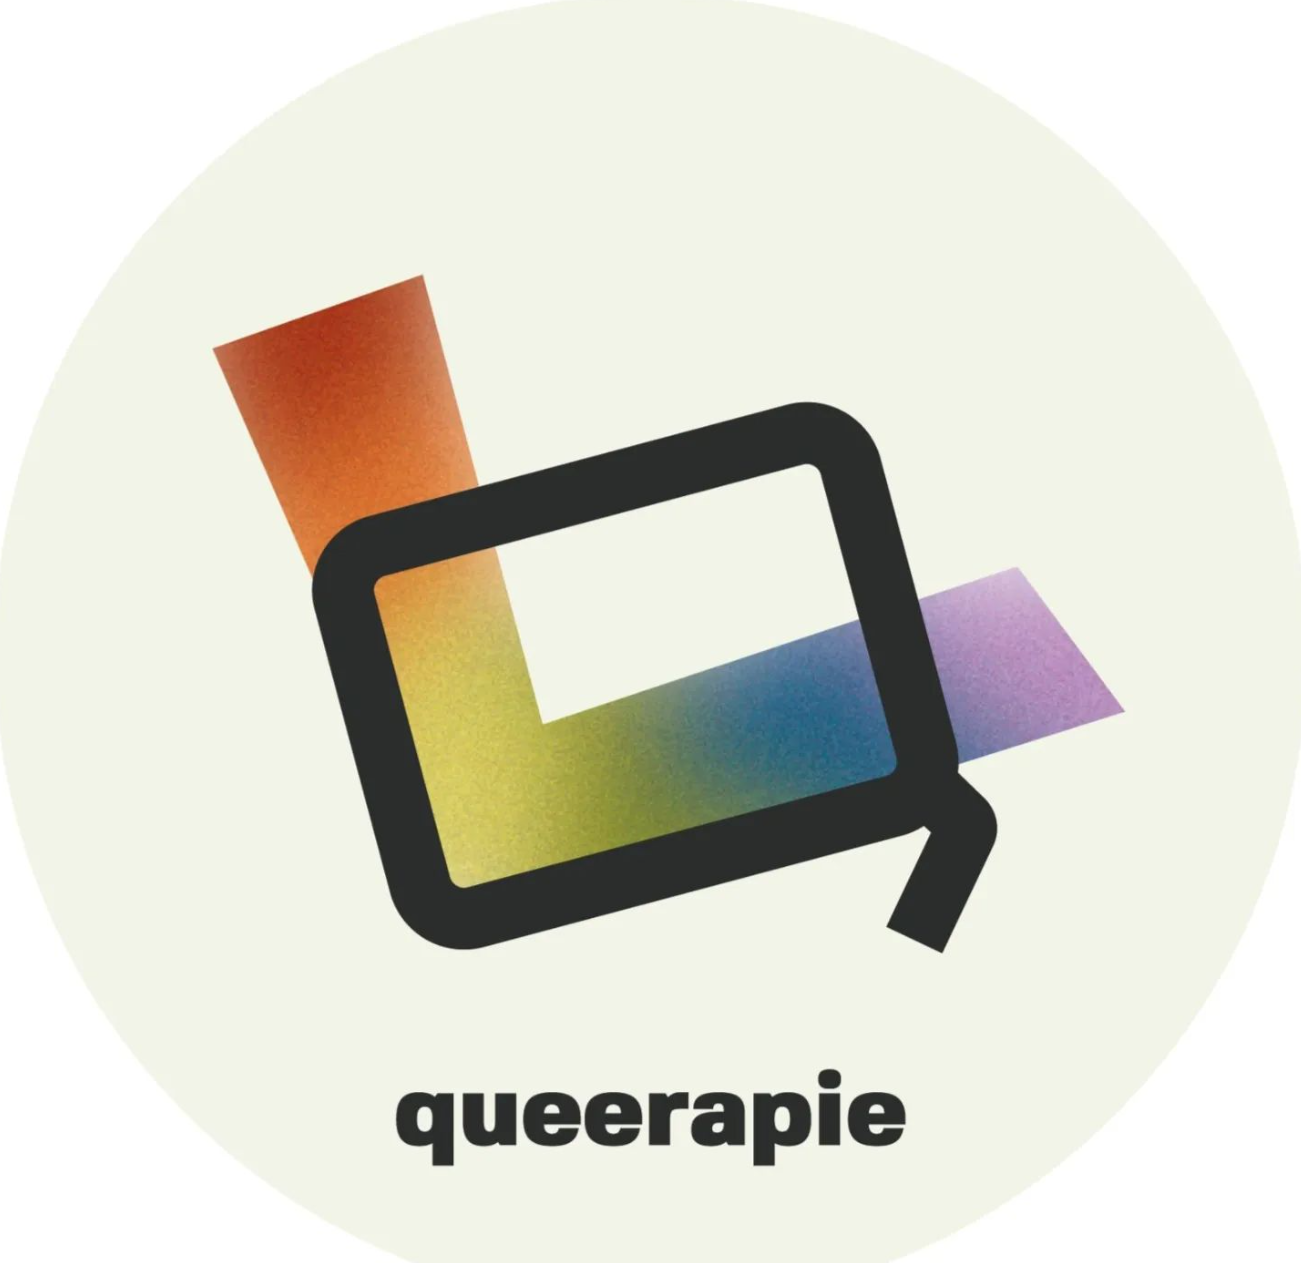 Brabantse makers releasen podcast over mentale gezondheid bij queer jongeren